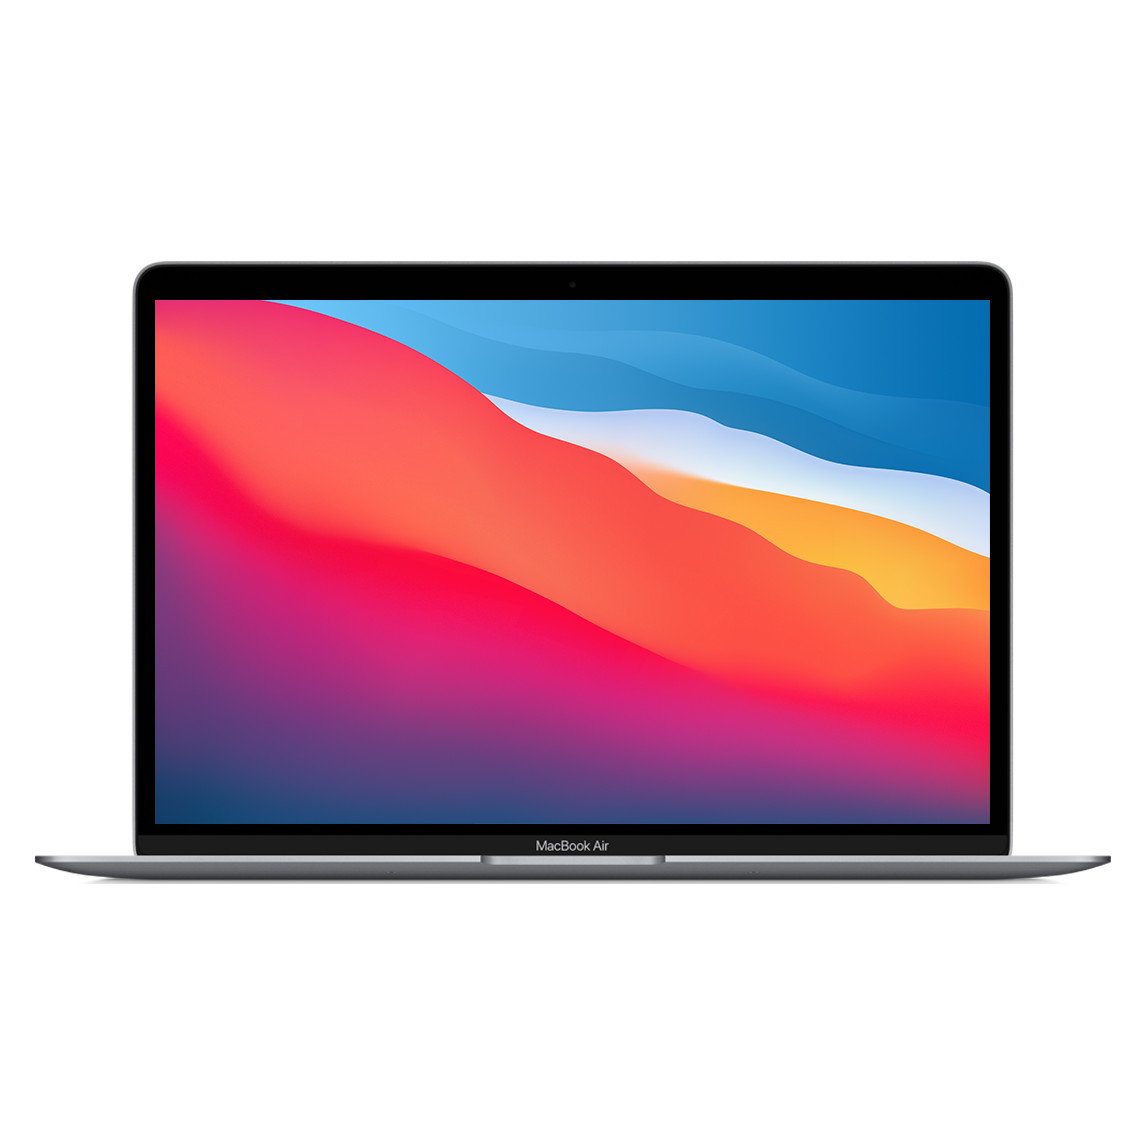 打開的 13.3 吋灰色 MacBook Air，展示纖薄邊框、FaceTime HD 相機與弧形邊緣。